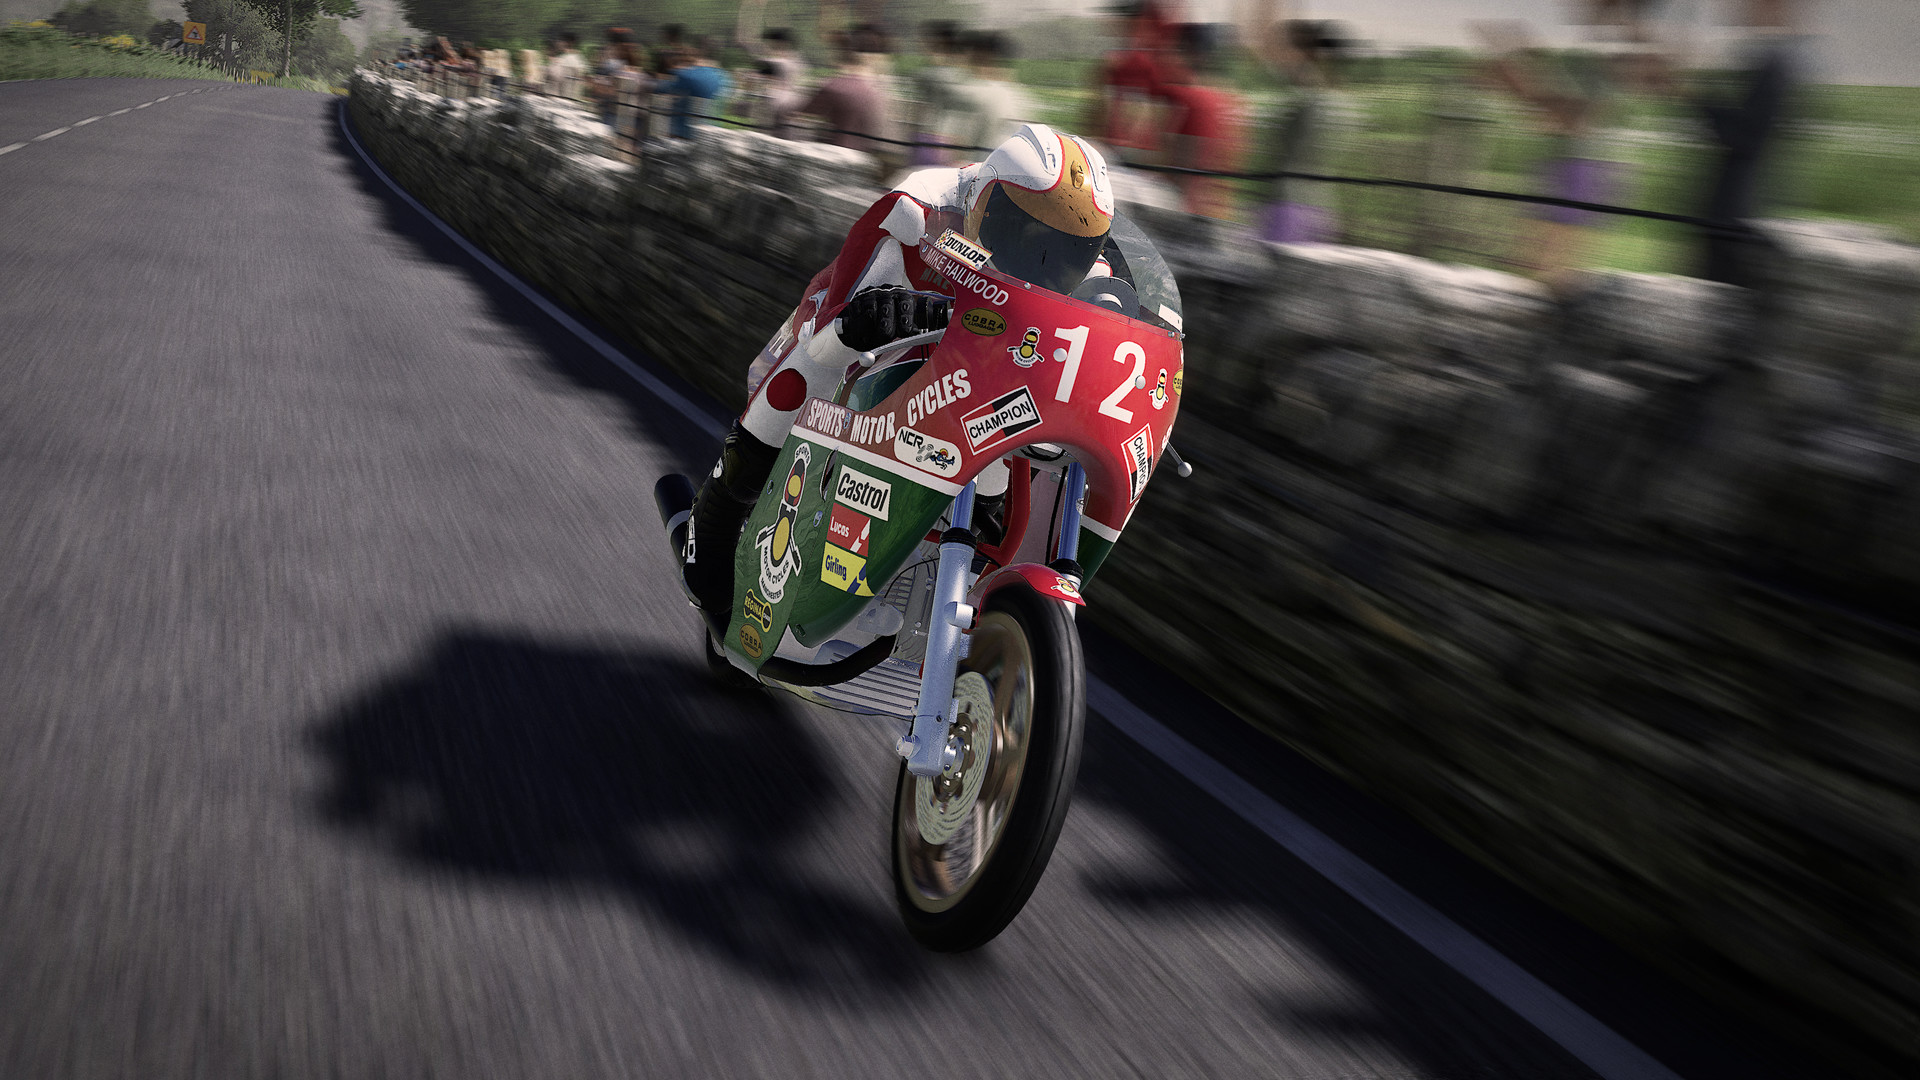 TT Isle of Man 2 Ducati 900 - Mike Hailwood 1978 screenshot